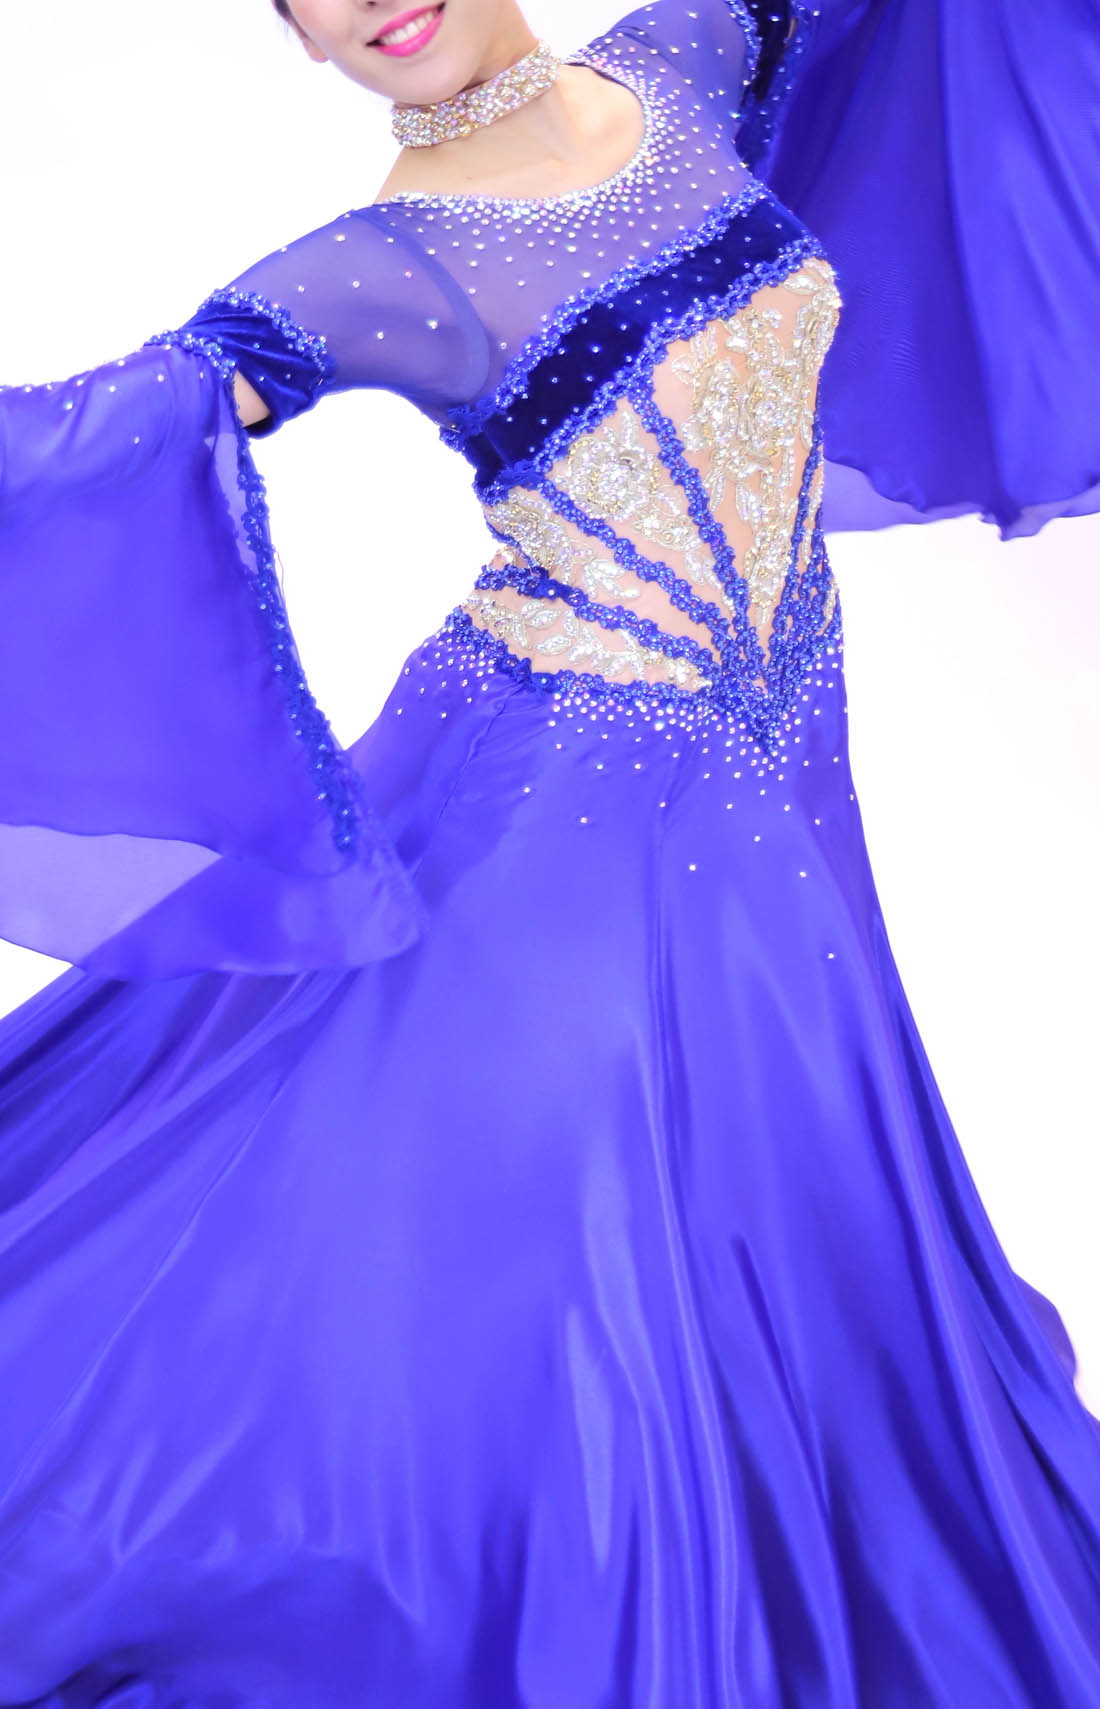 ロイヤルブルー・青色の社交ダンス衣装・ドレス、スタンダード・モダン用ドレス